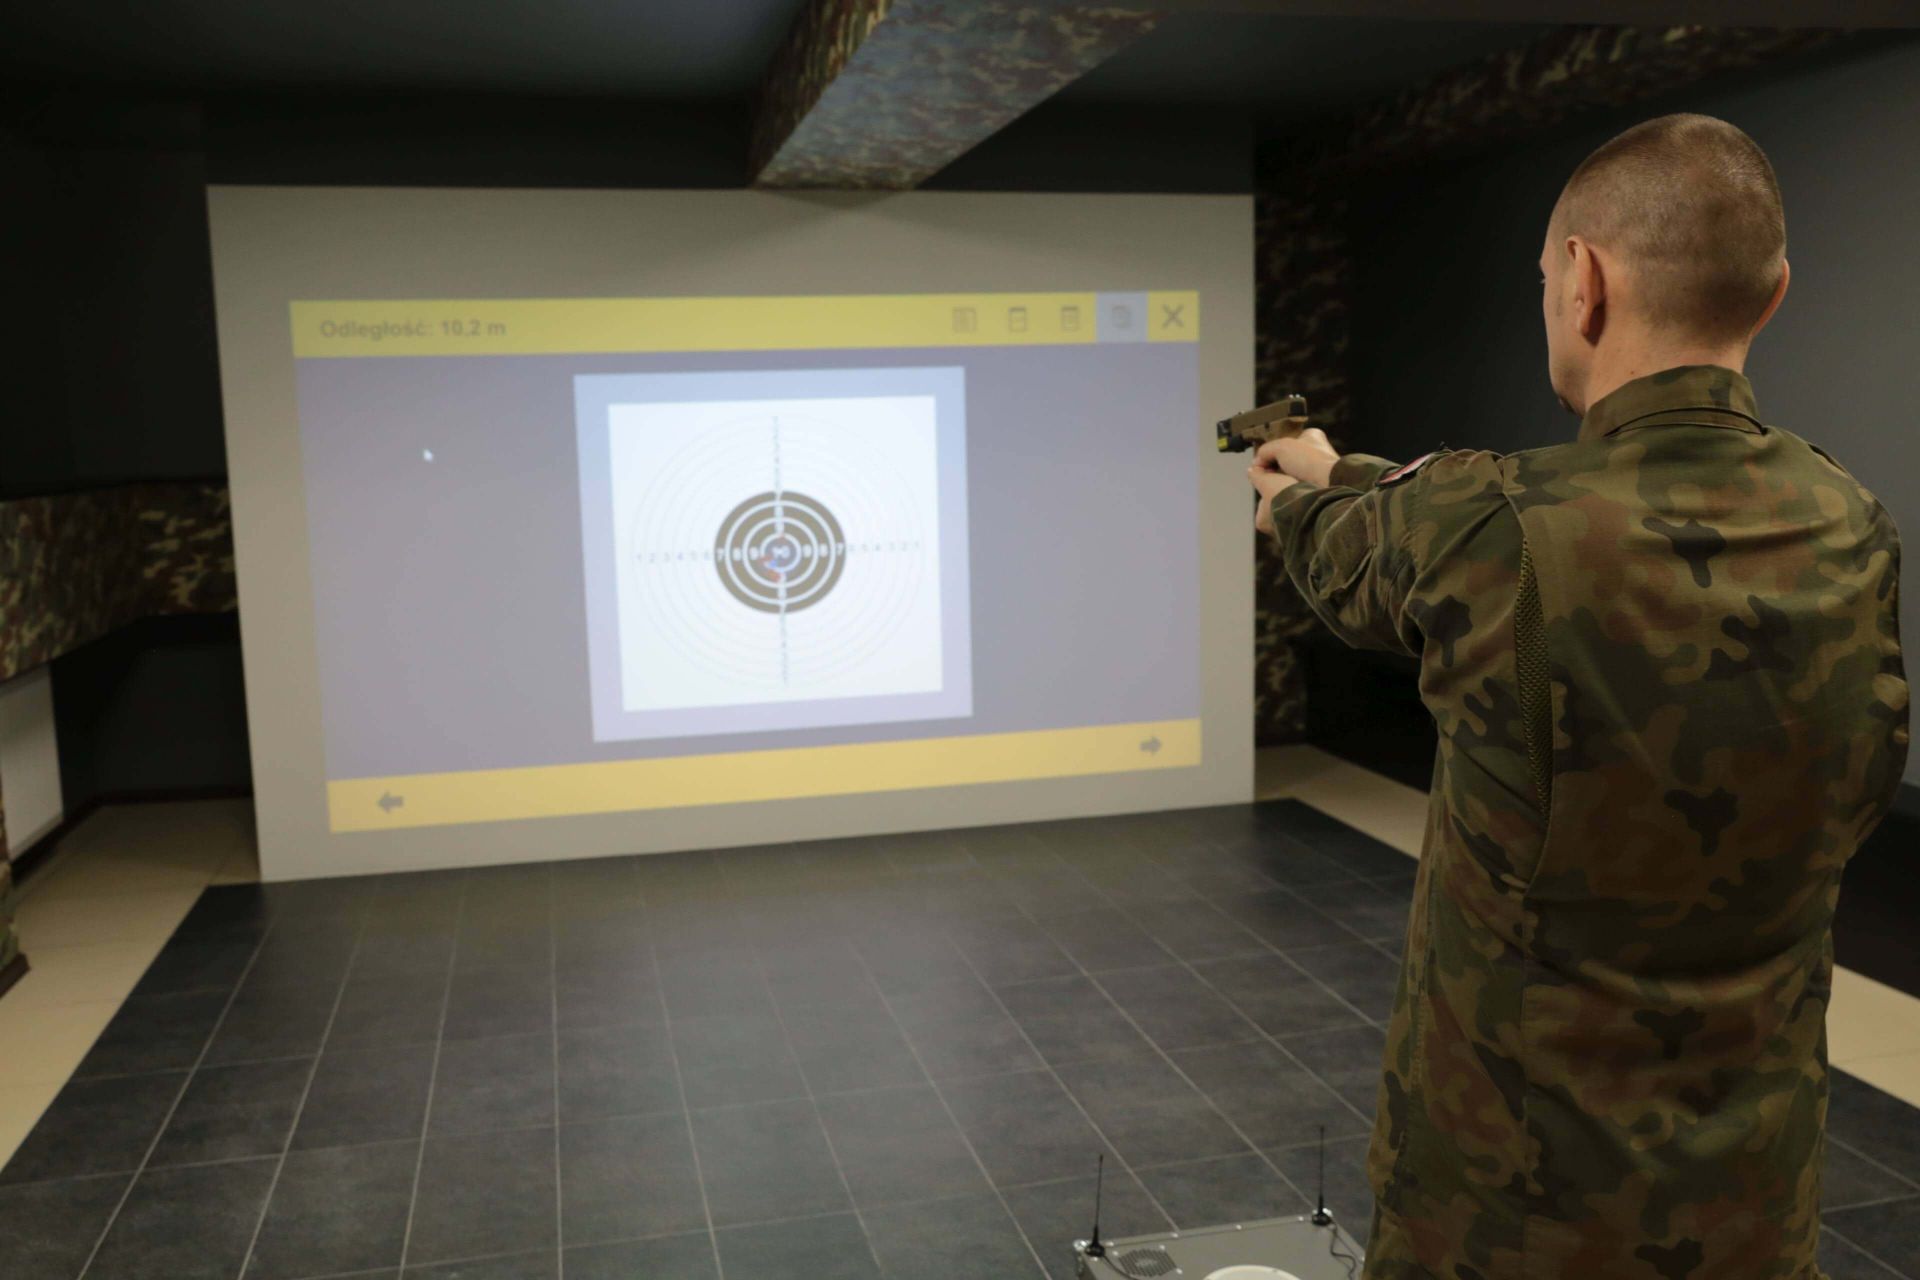 Wirtualna strzelnica umożliwia praktykowanie strzelectwa w sposób bardzo bezpieczny. Zdj. Wacław Troszka